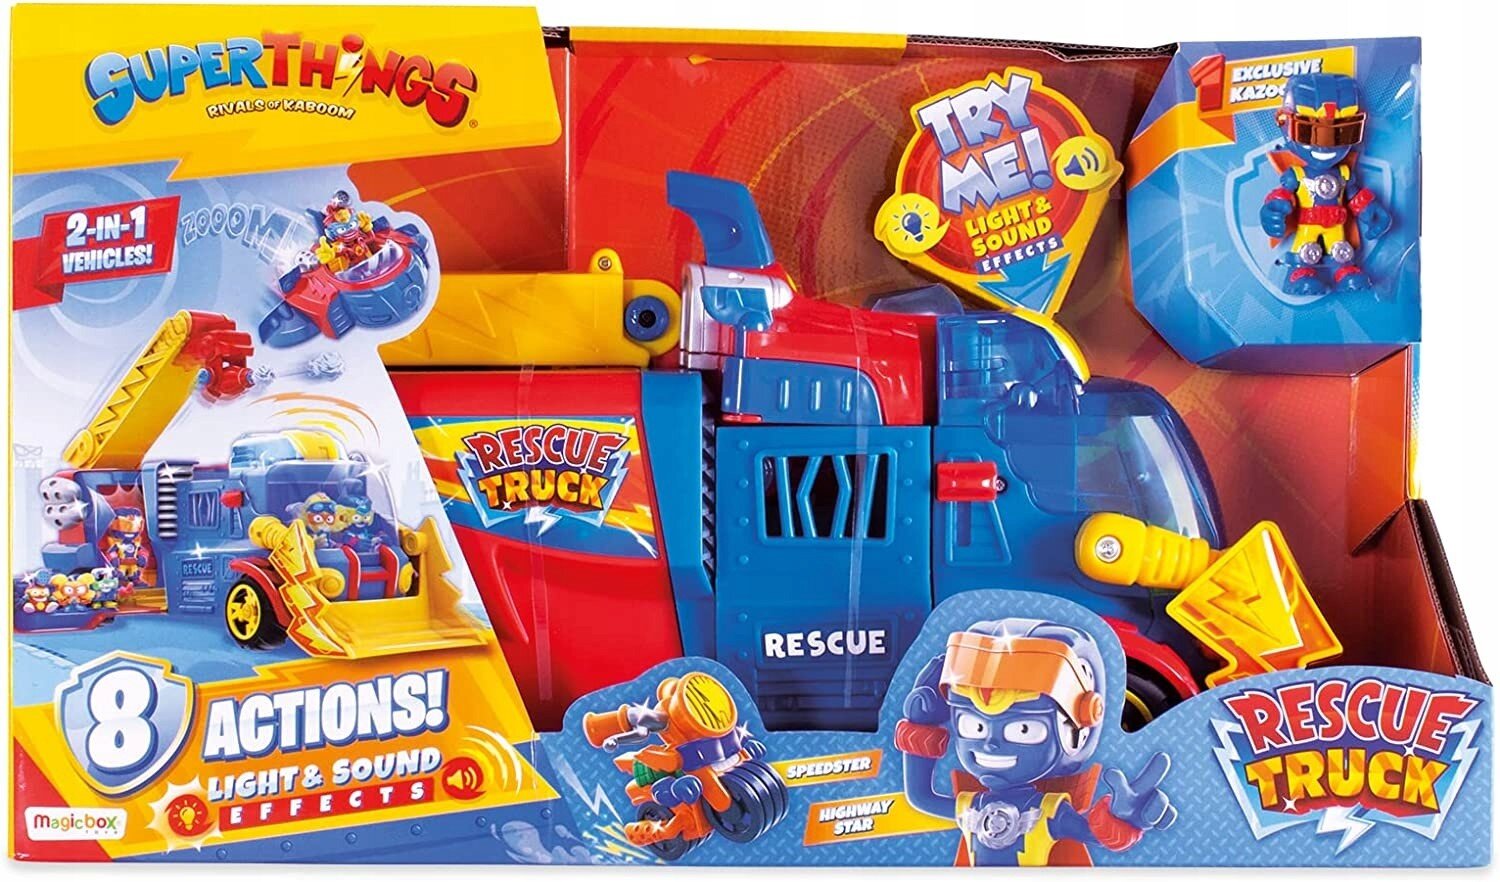 Super Things 3 Kazoom Kids Kazoom Kid - Magic Box Toys Polska Sp. z o.o.